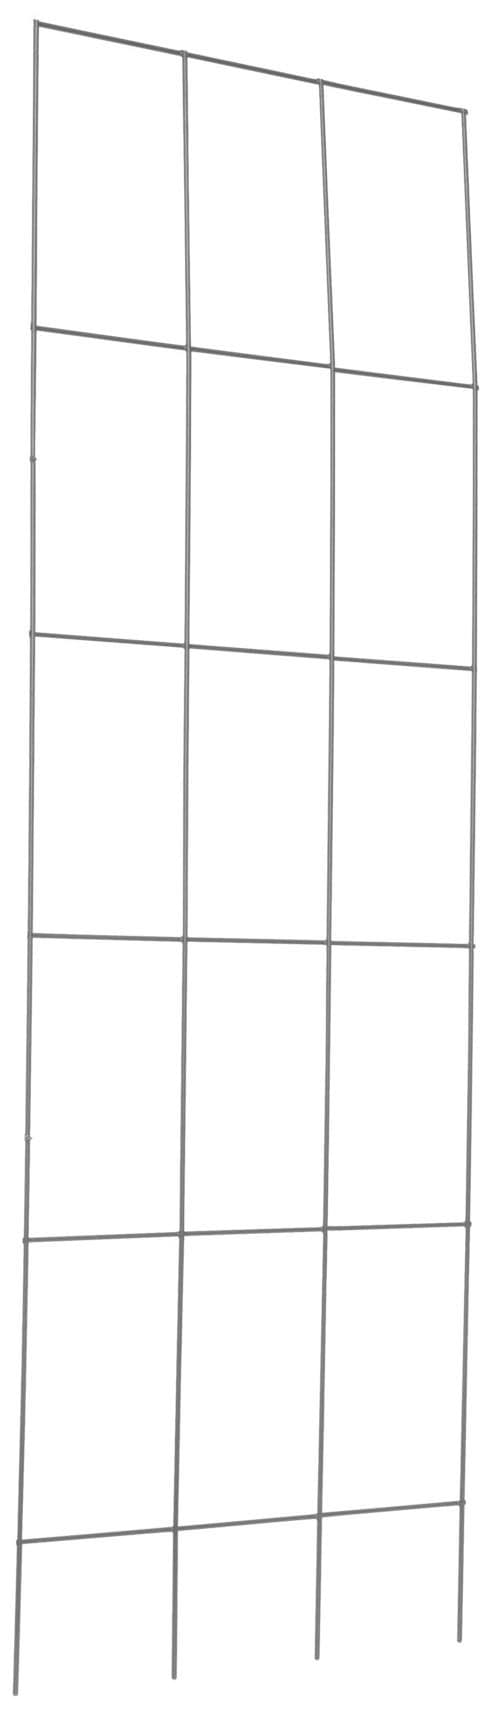 Spalier, Gitterspalier aus Metall, rostfrei, H: 150 cm